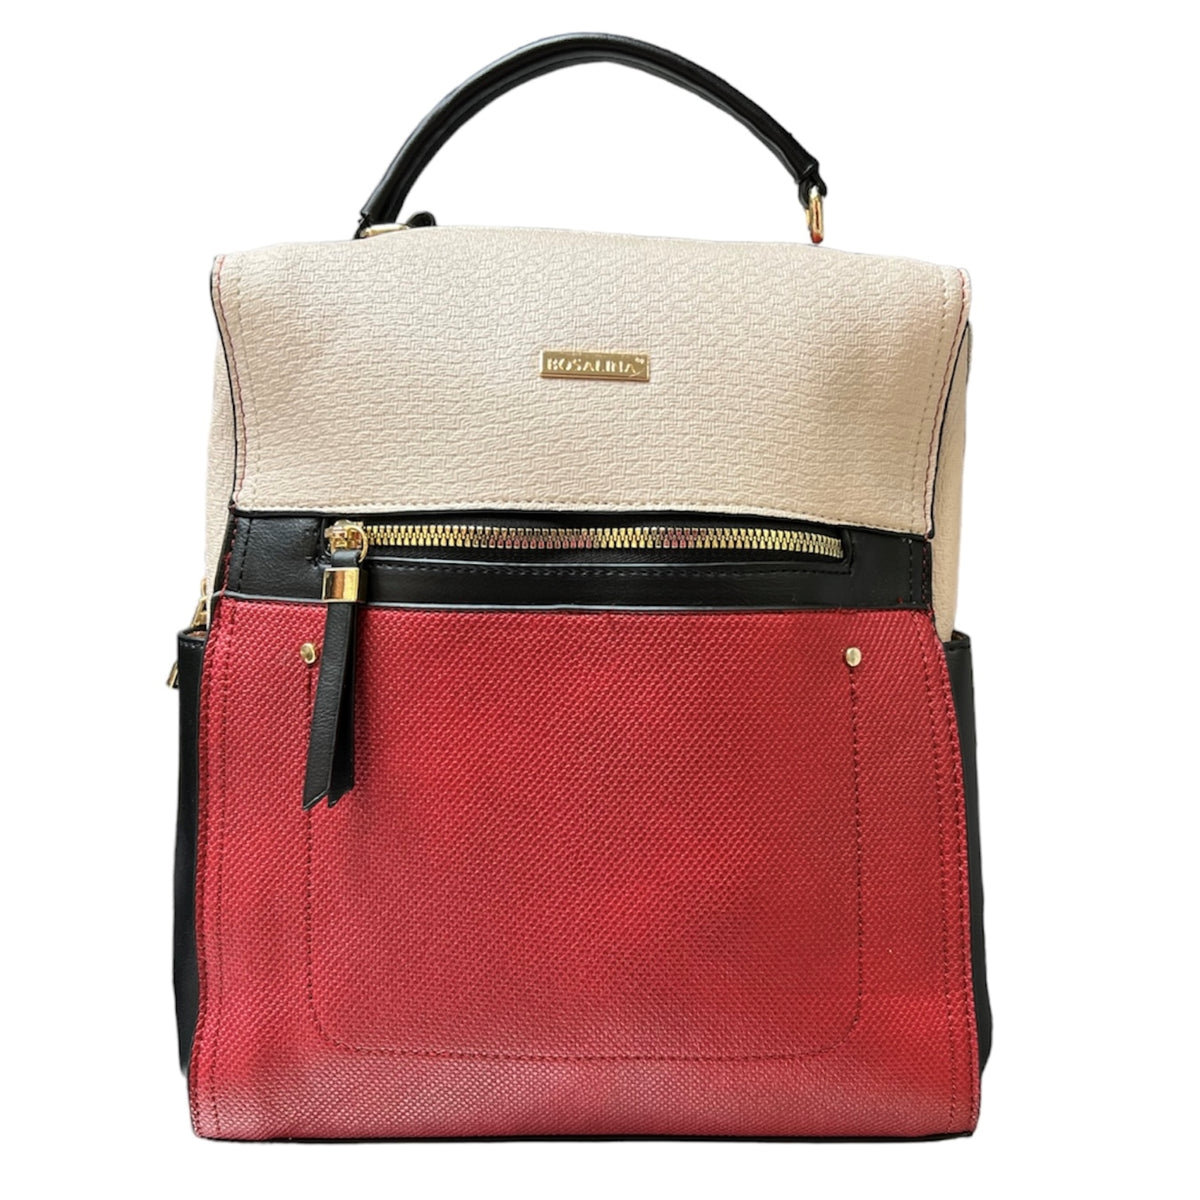 Le Bosalina sac à dos rouge multi est très chic et à la mode avec ses couleurs éclatantes. Il est le compagnon parfait pour vos voyages et vos sorties avec sa combinaison rouge, beige et noir. Prêt à être saisi pour créer des looks incroyables et donner à votre style une touche chaleureuse et soudaine !